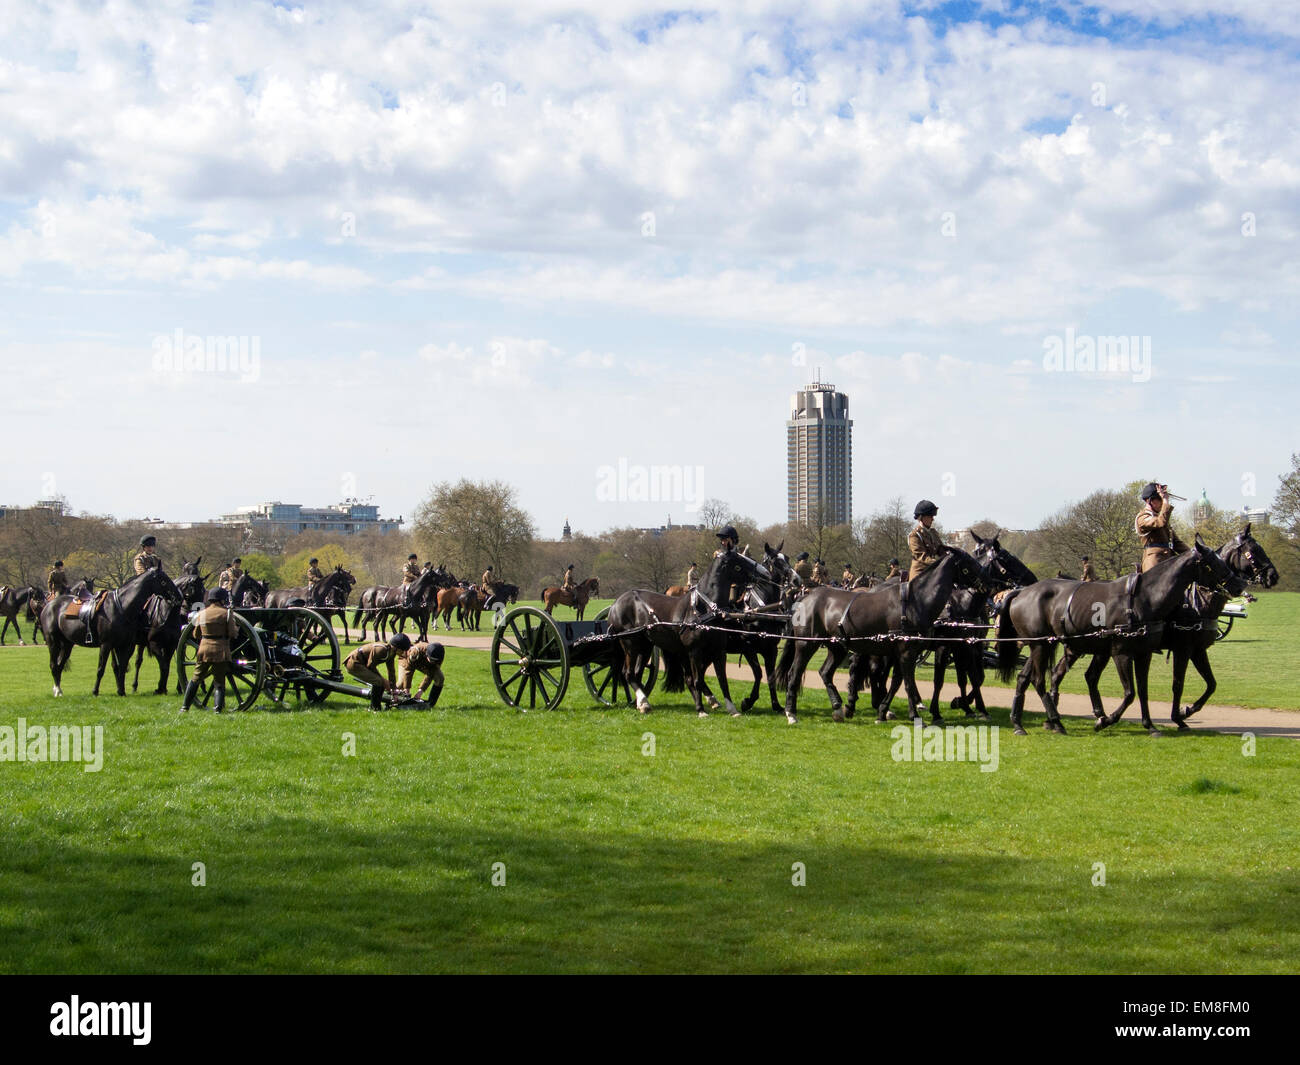 Londres, Royaume-Uni. 17 avril, 2015. Royal Horse Artillery gun carrage répétition à Hyde Park de Londres. La plupart des gummers étaient des femmes. 17/4/2015 : Crédit Cabanel/Alamy Live News Banque D'Images